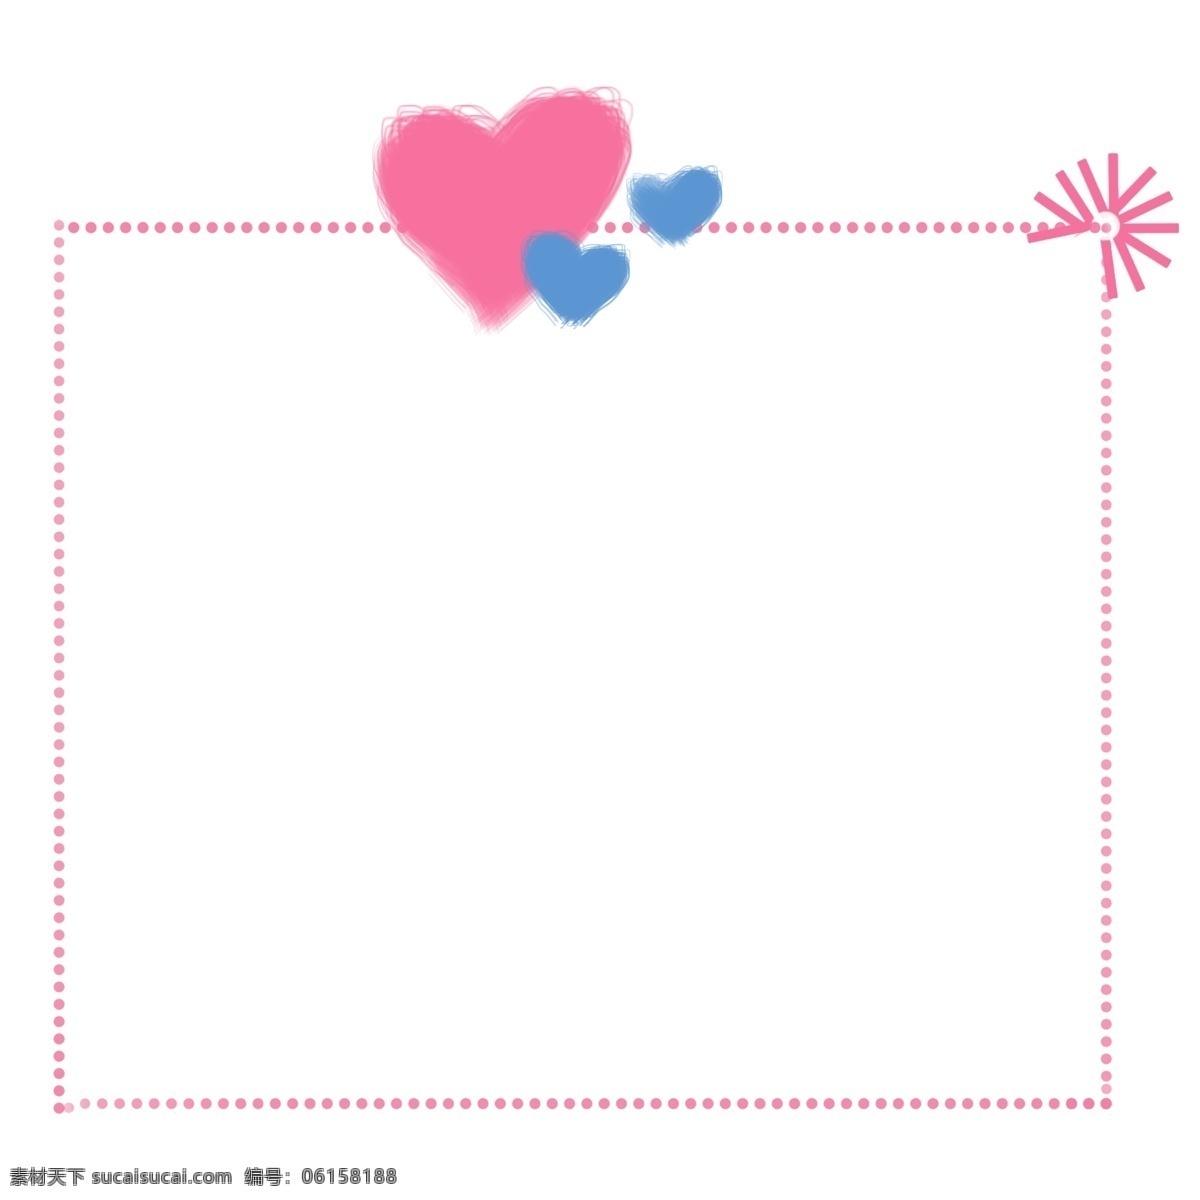 爱心 唯美 边框 图形 粉色爱心边框 对话框 唯美水彩粉色 婚礼 卡片 背景 海报边框